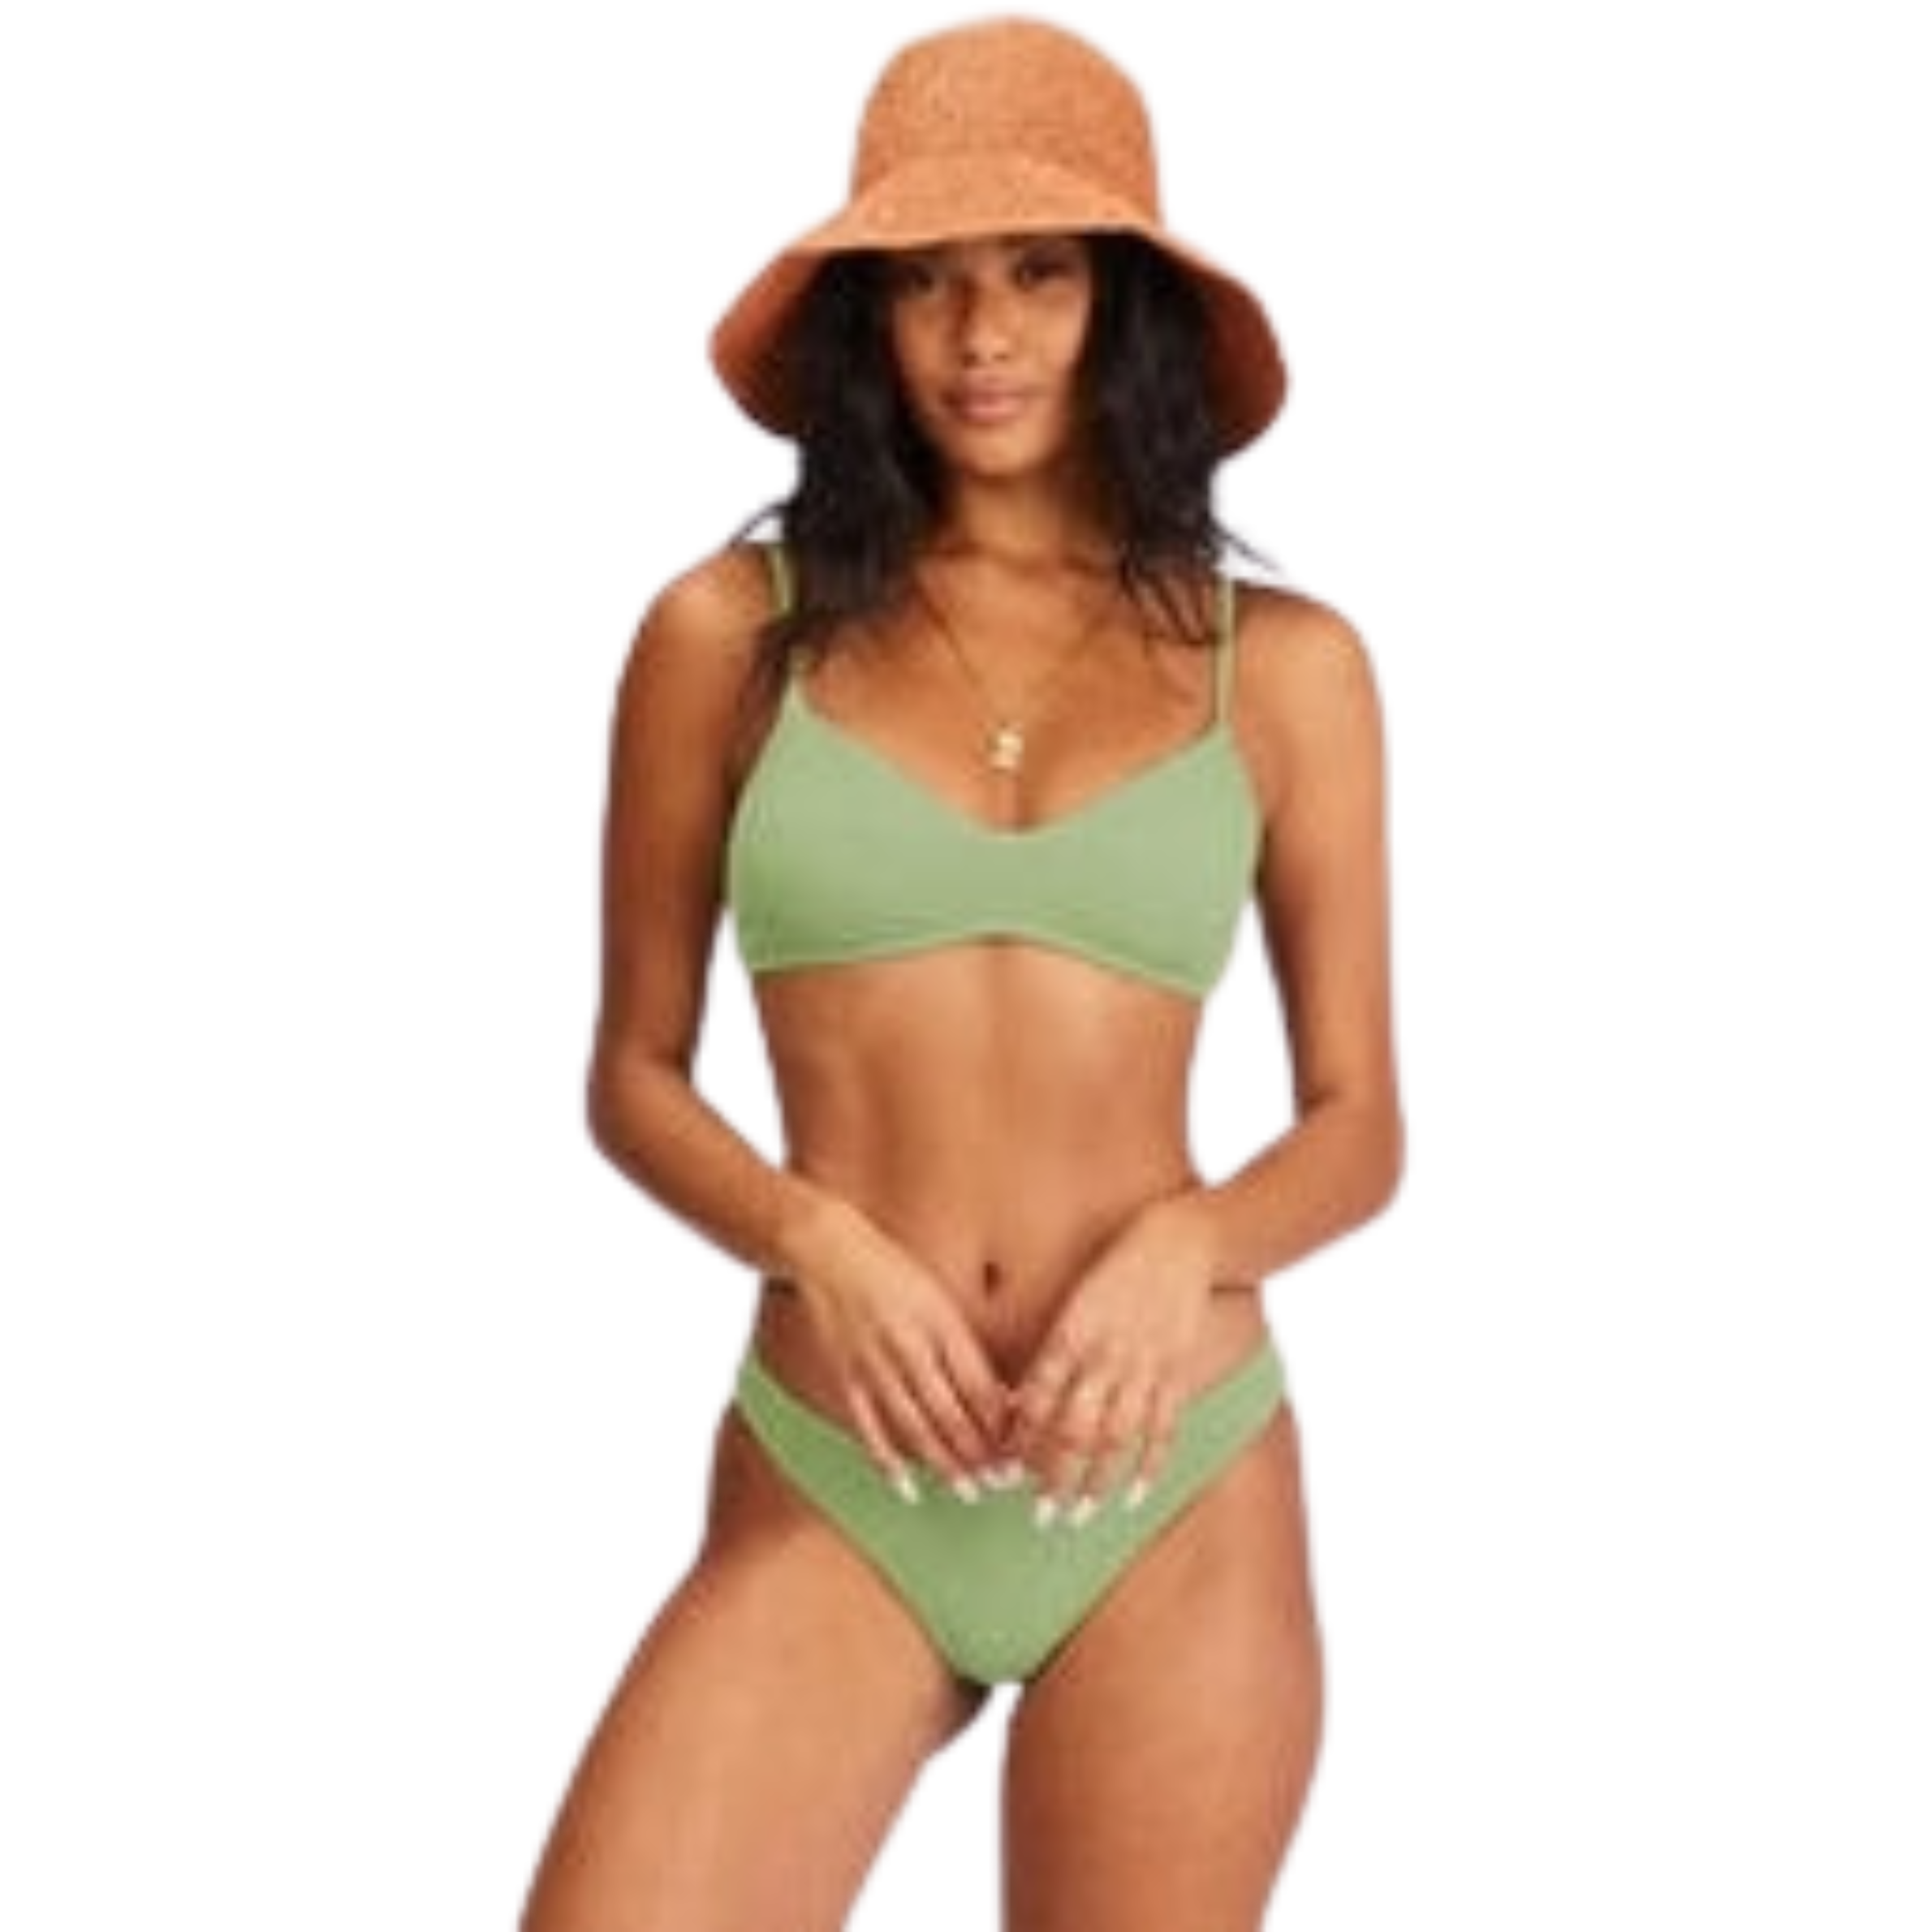 https://spunkyssurfshop.com/cdn/shop/files/billabong-summer-high-isla-swim-bottoms-women-swim-bottoms-billabong_2380x.png?v=1701111960